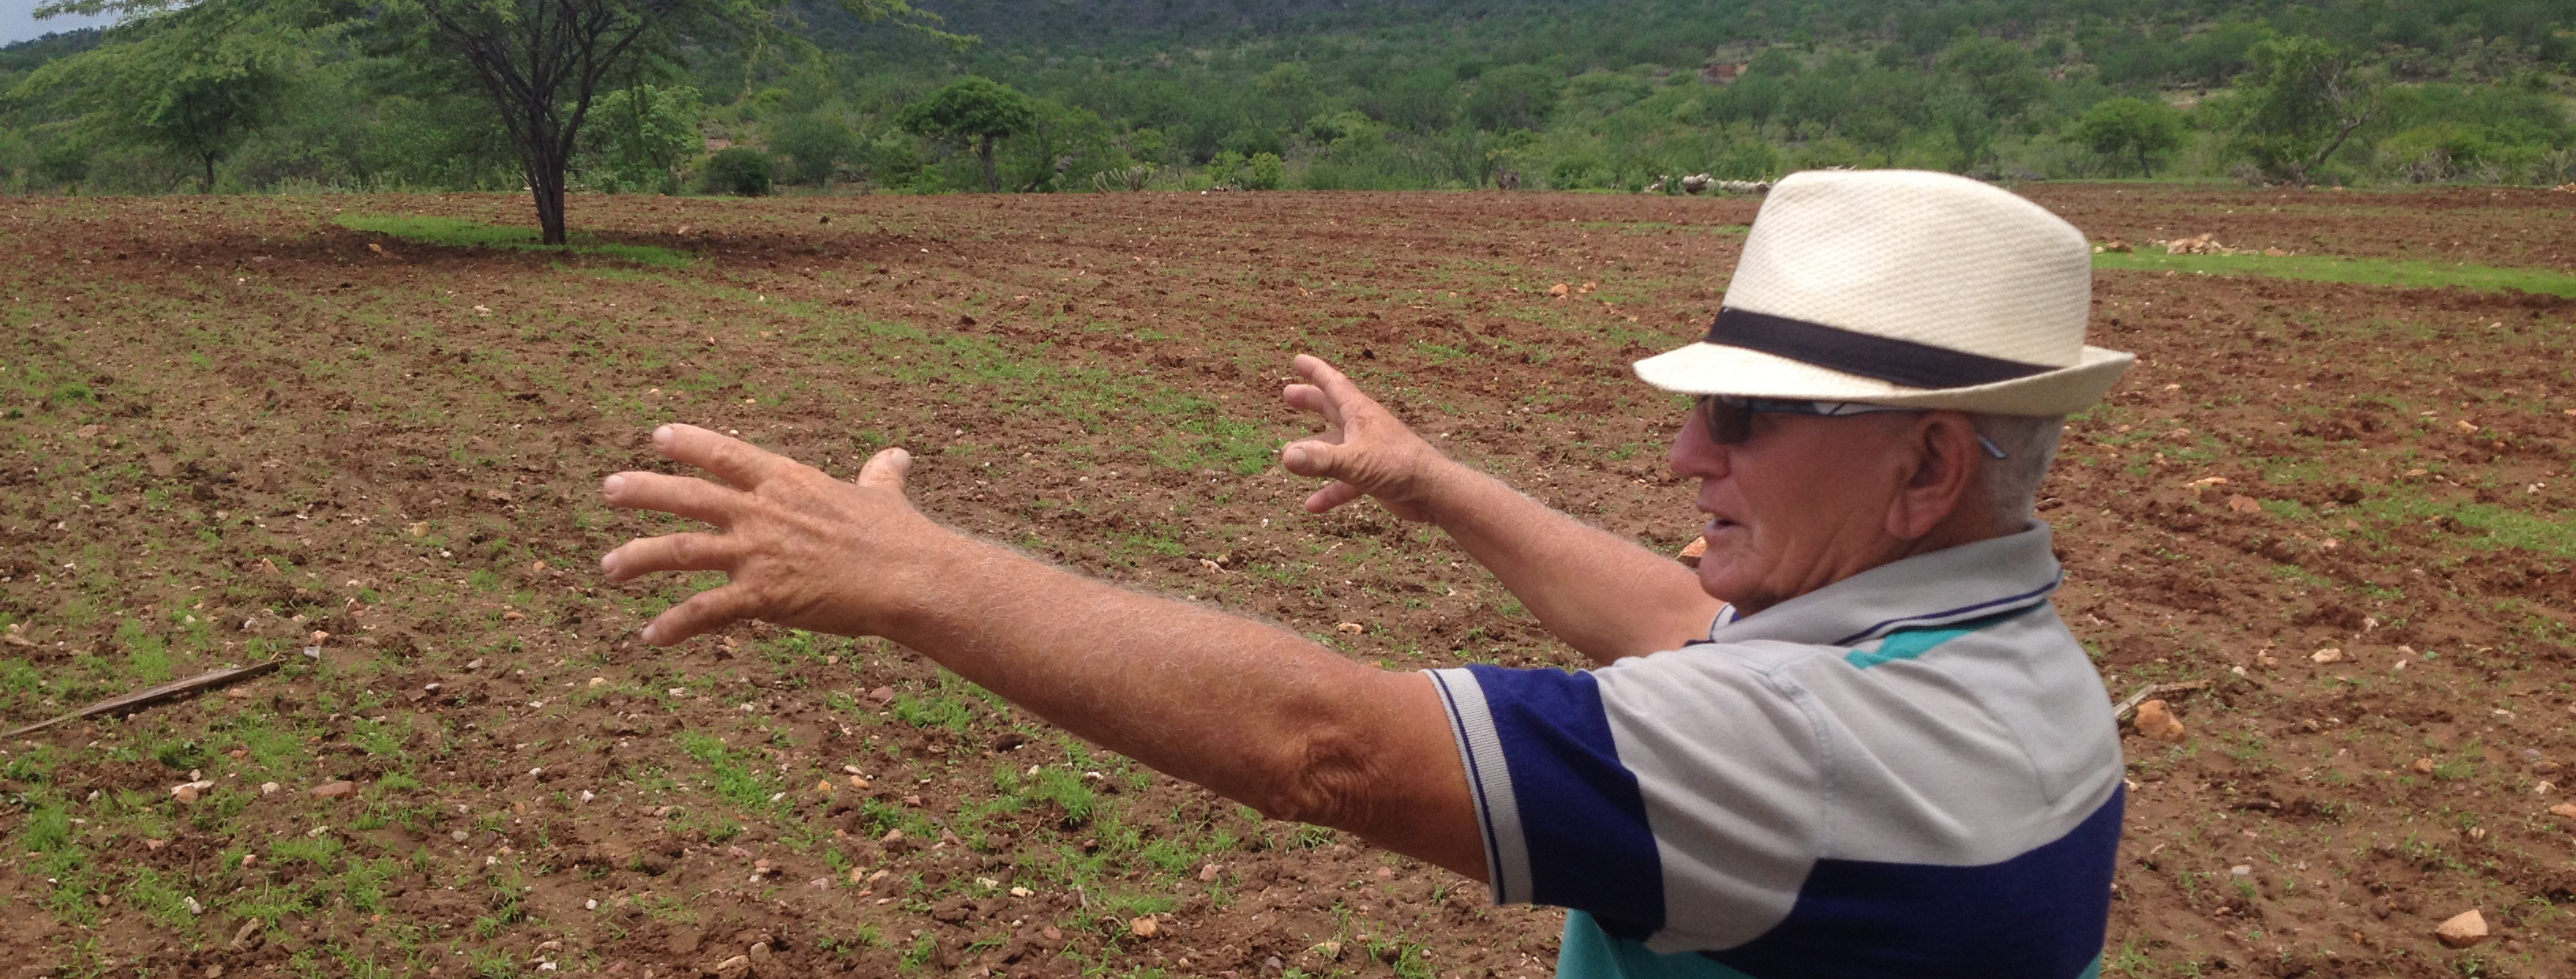 Manuel Siqueira de Melo (Lino), ADEC, explicando sus plantaciones orgánicas en fajas, Tauá, Ceará, Brazil 2016